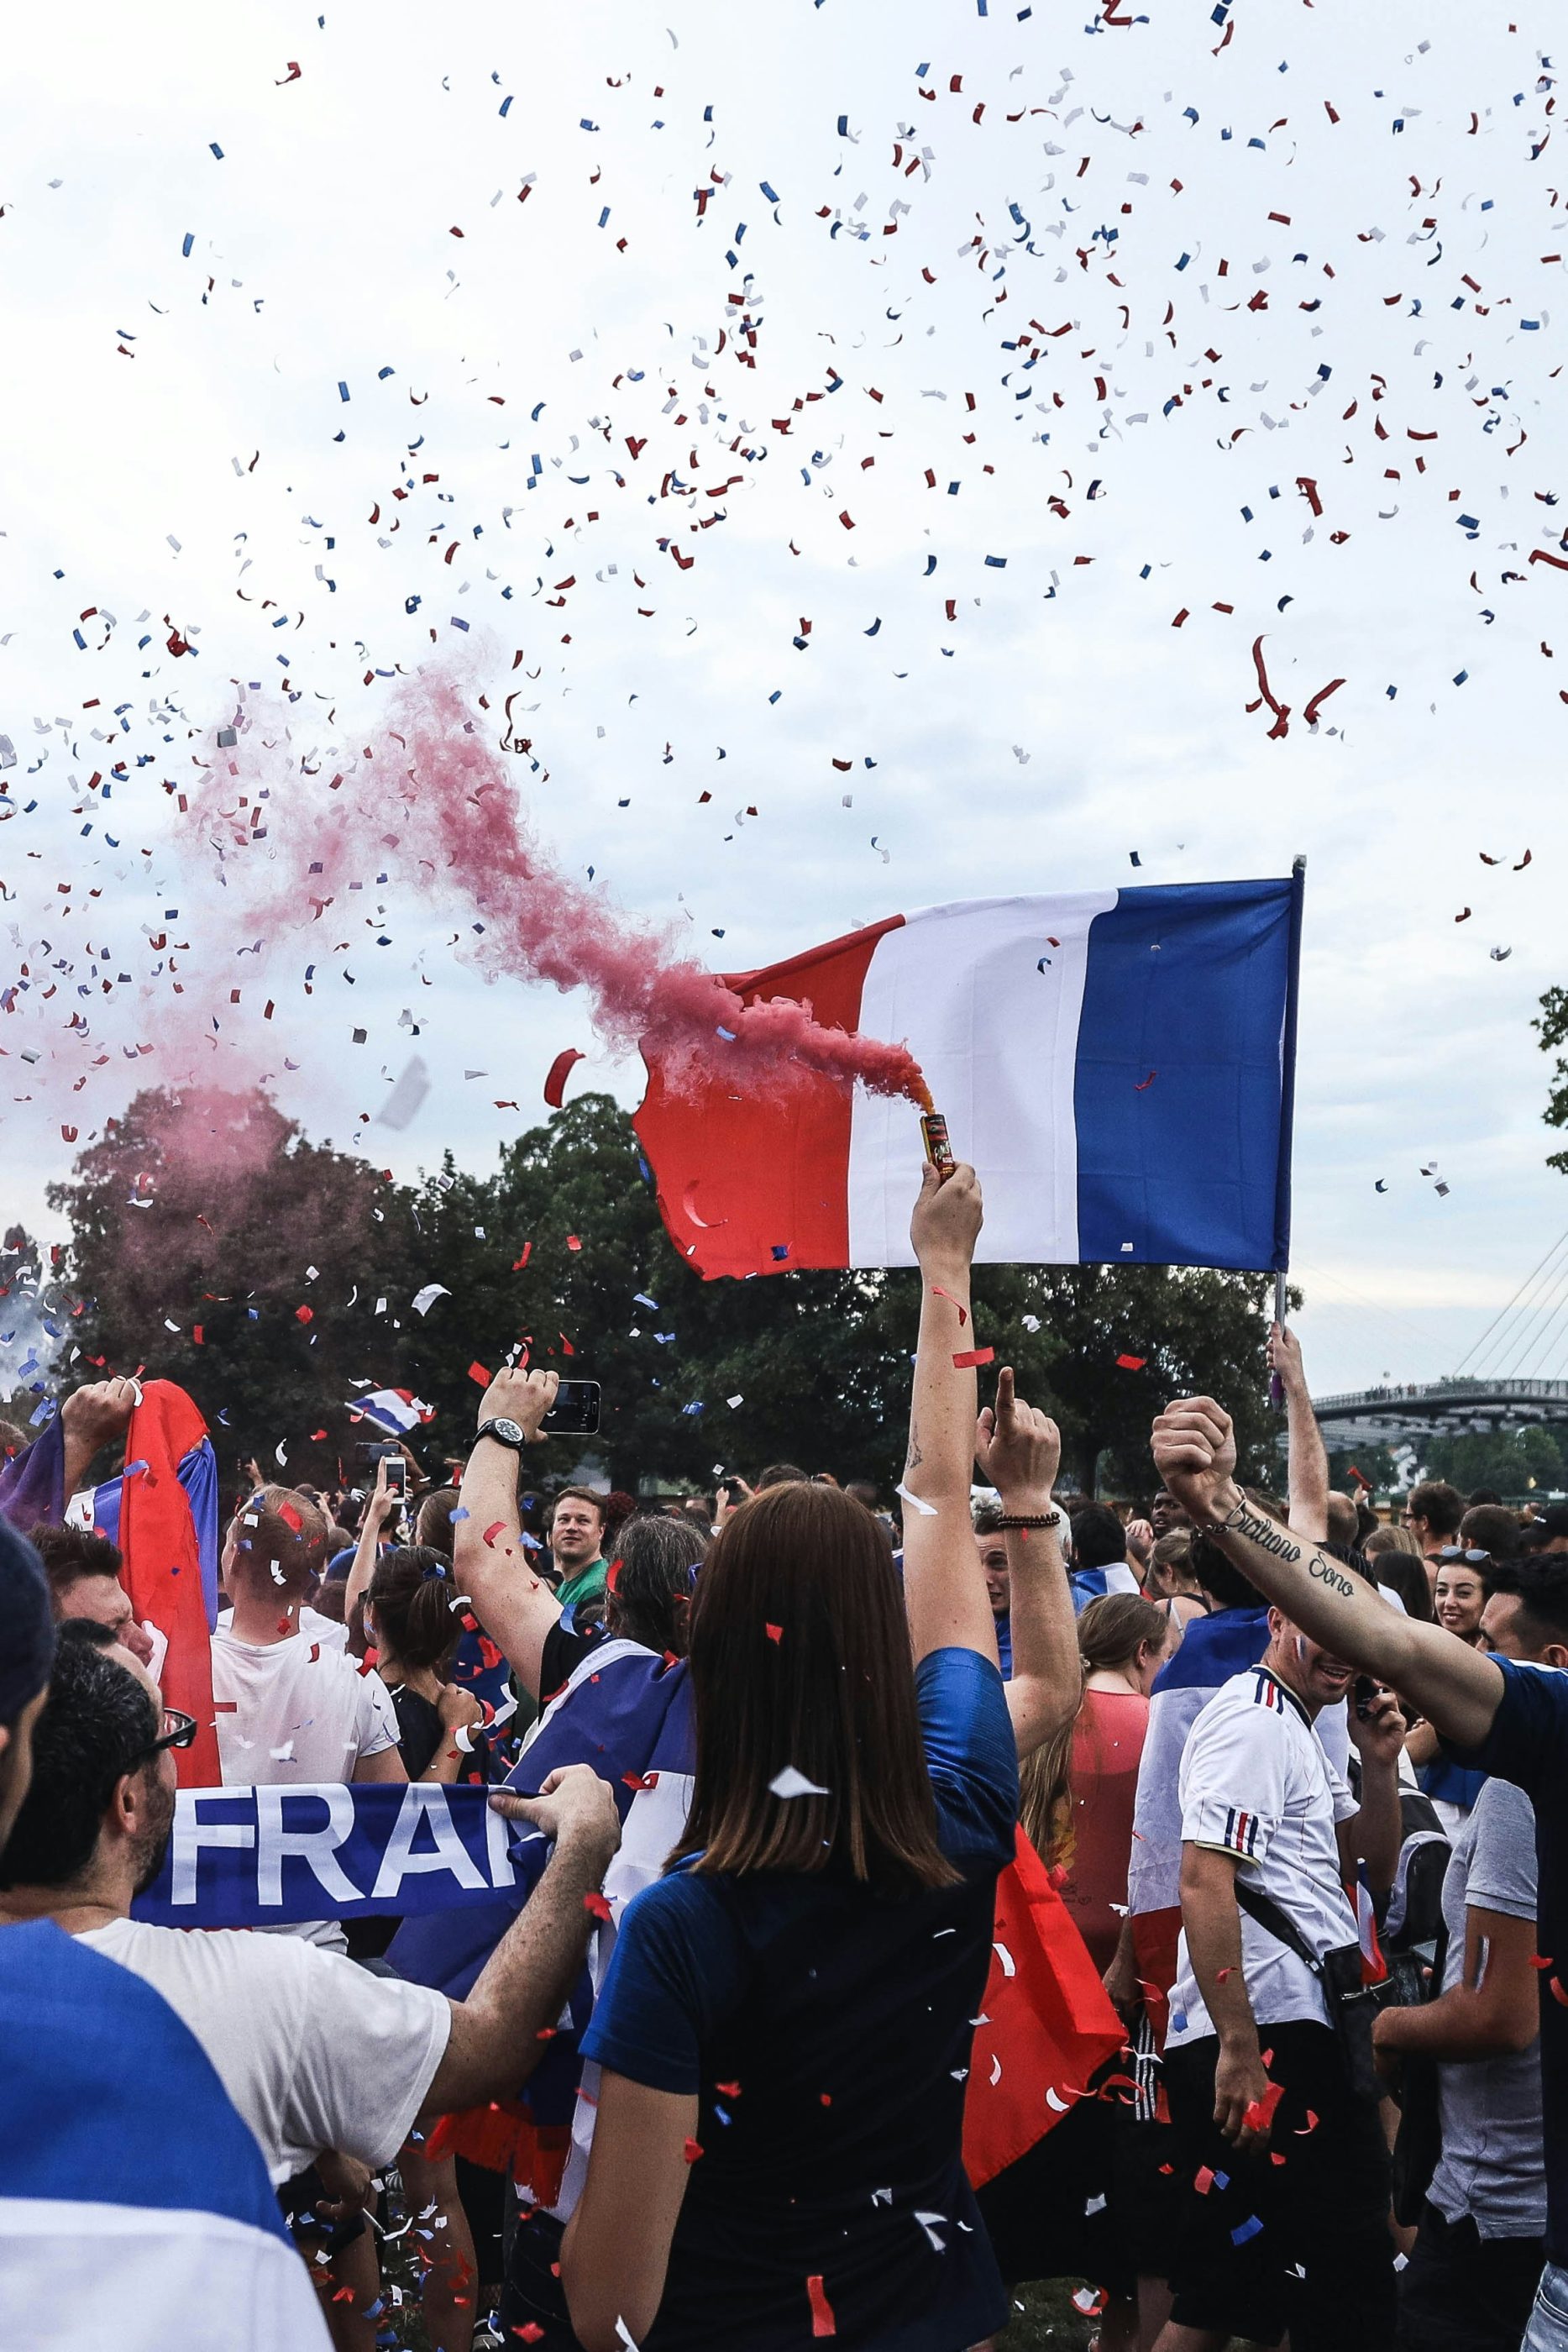 Jour de match : des supporters sont présents de dos avec des drapeaux français, des confettis et des écharpes aux couleurs bleau-blanc-rouge